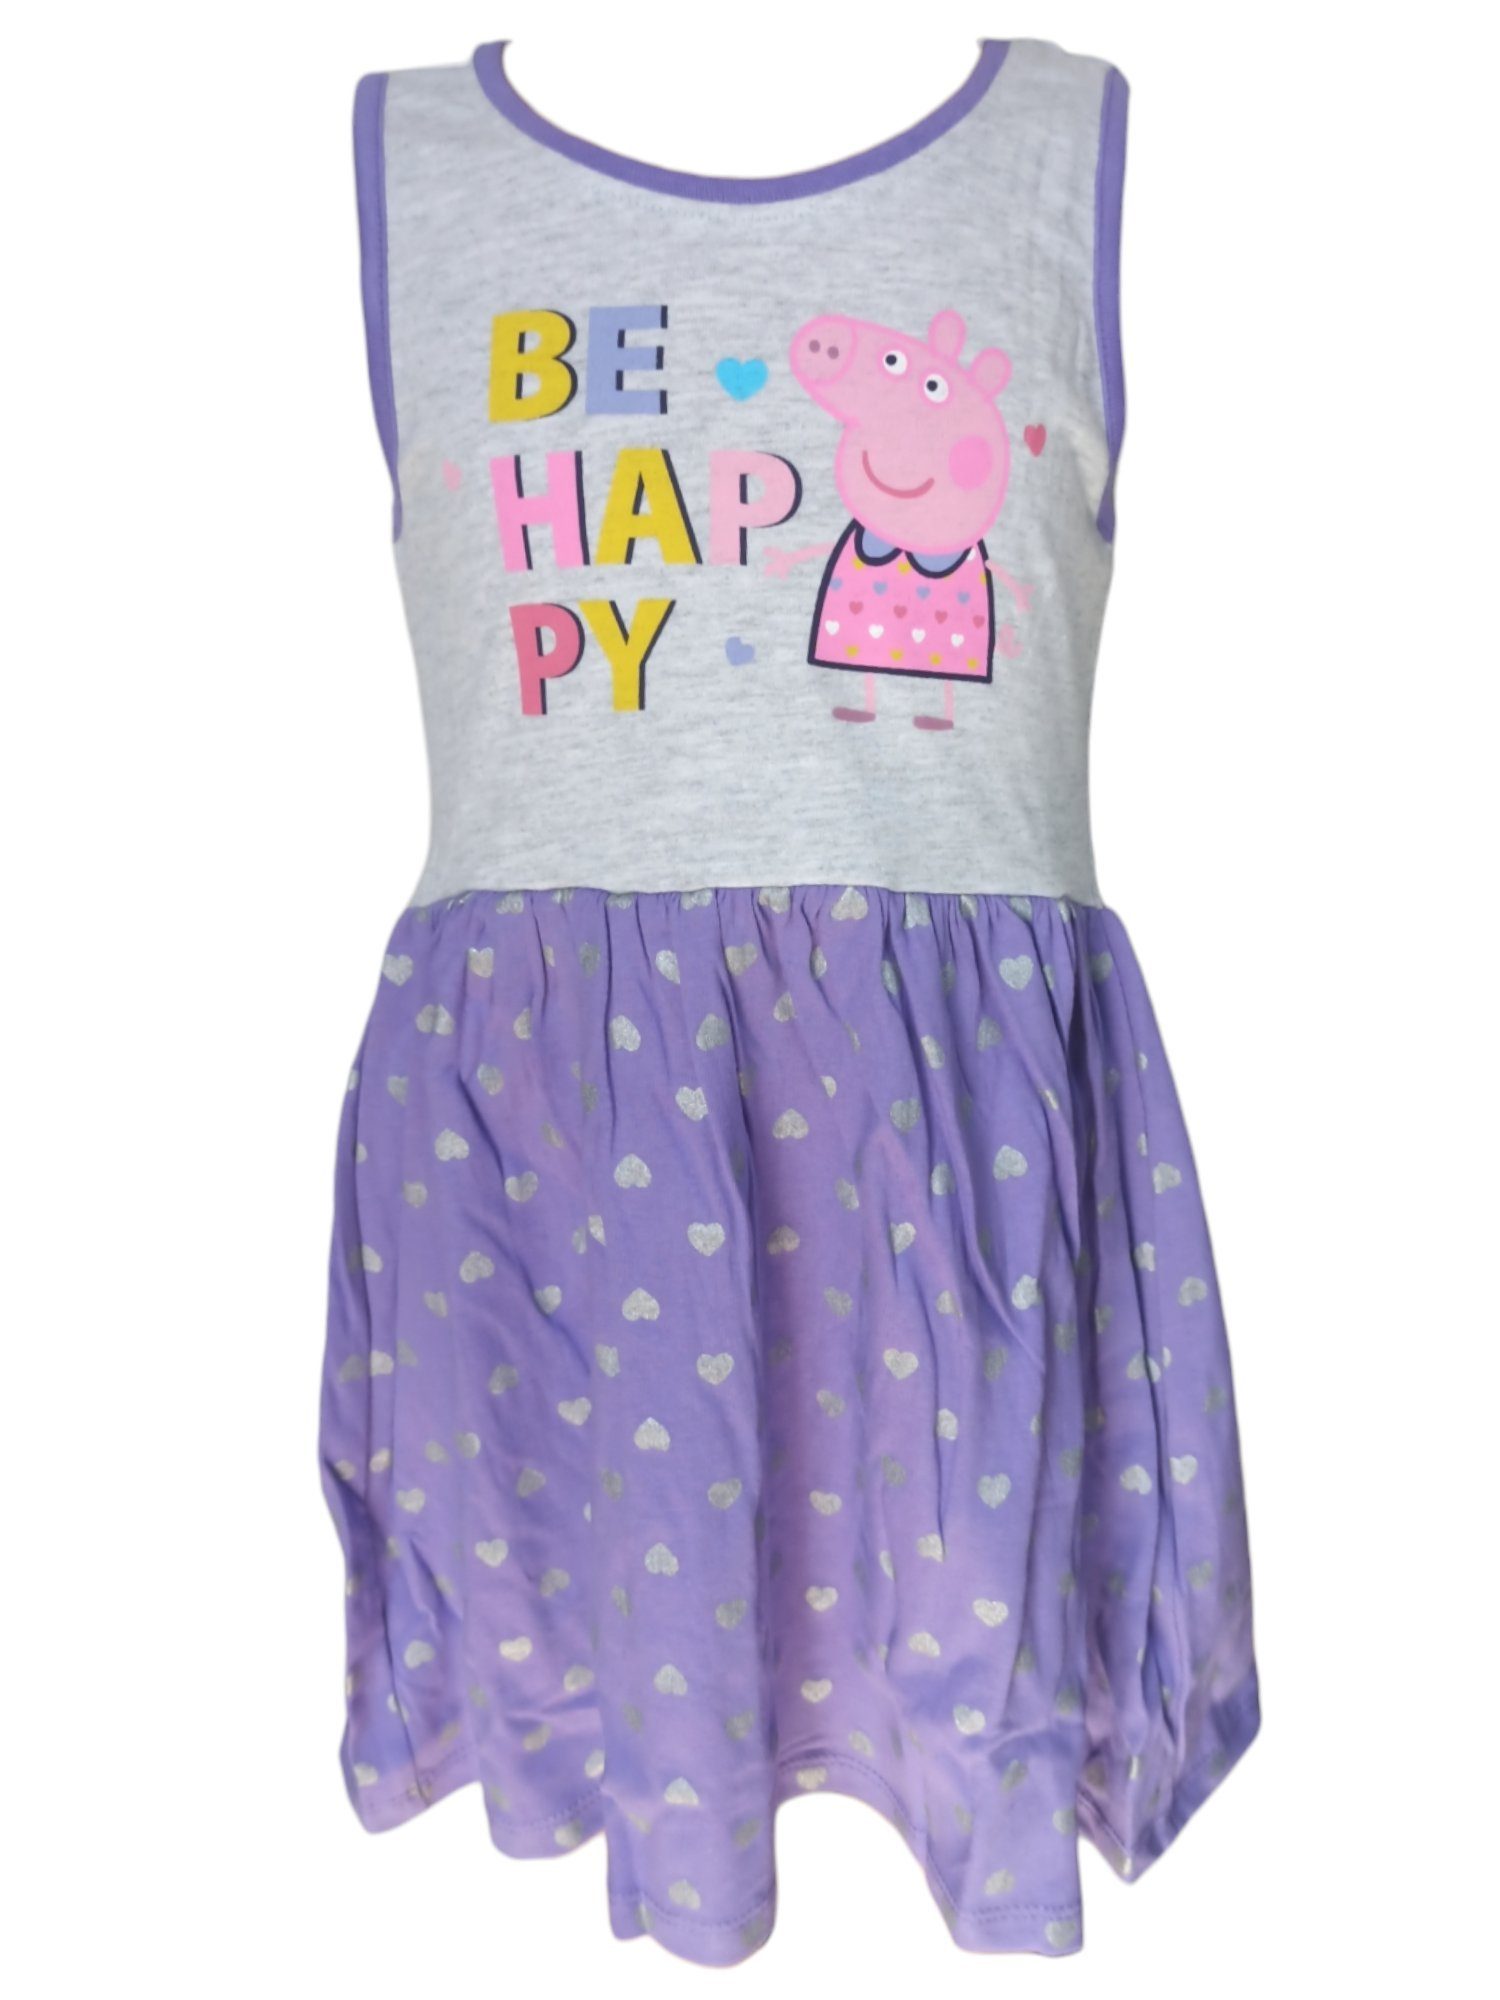 cm für Mädchen Jerseykleid Peppa Pig Sommerkleid 92-116 Peppa Wutz - Lila HAPPY Gr. BE